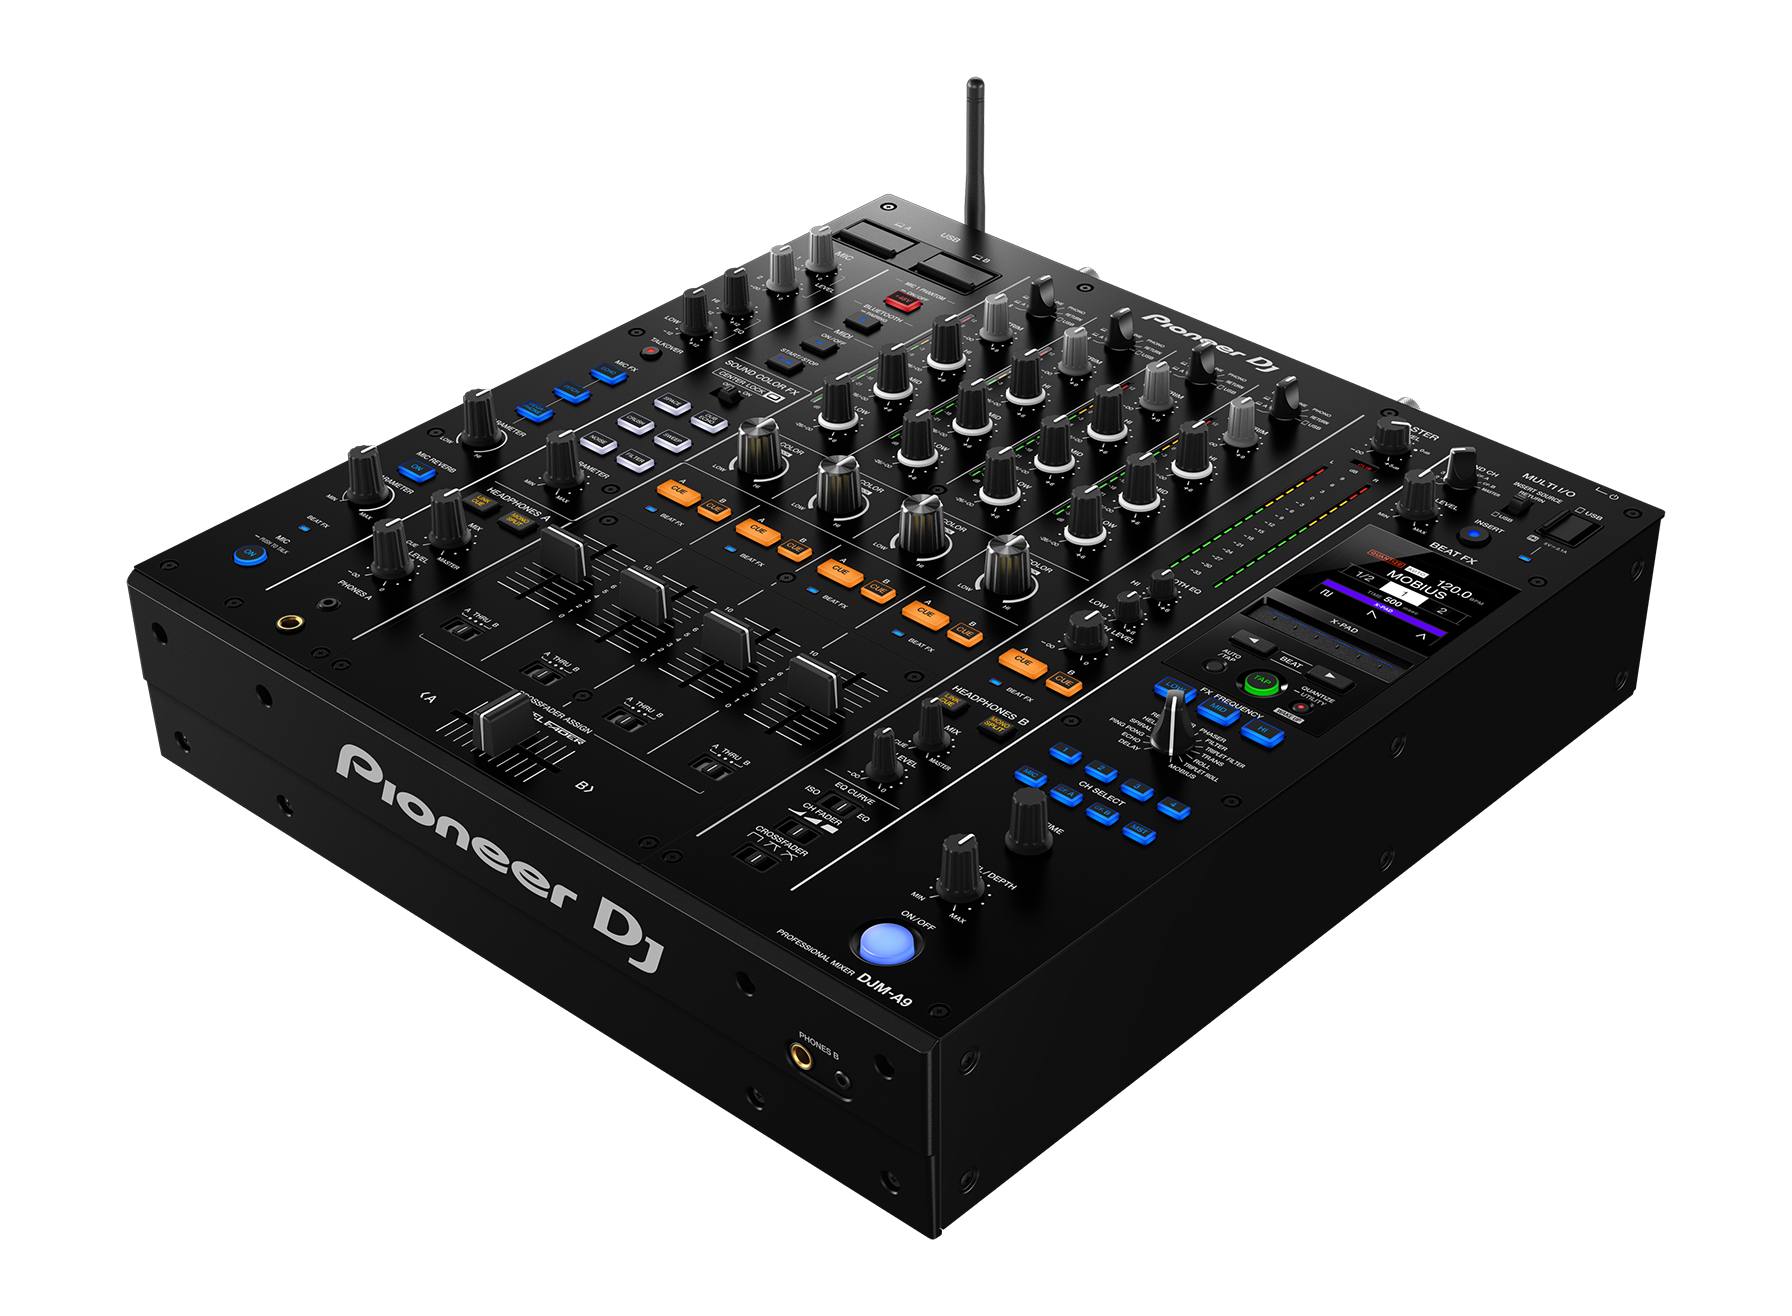 Pioneer DJ DJM-A9 Mixer Professional 4 Channel DJ Mixer w/ Bluetooth